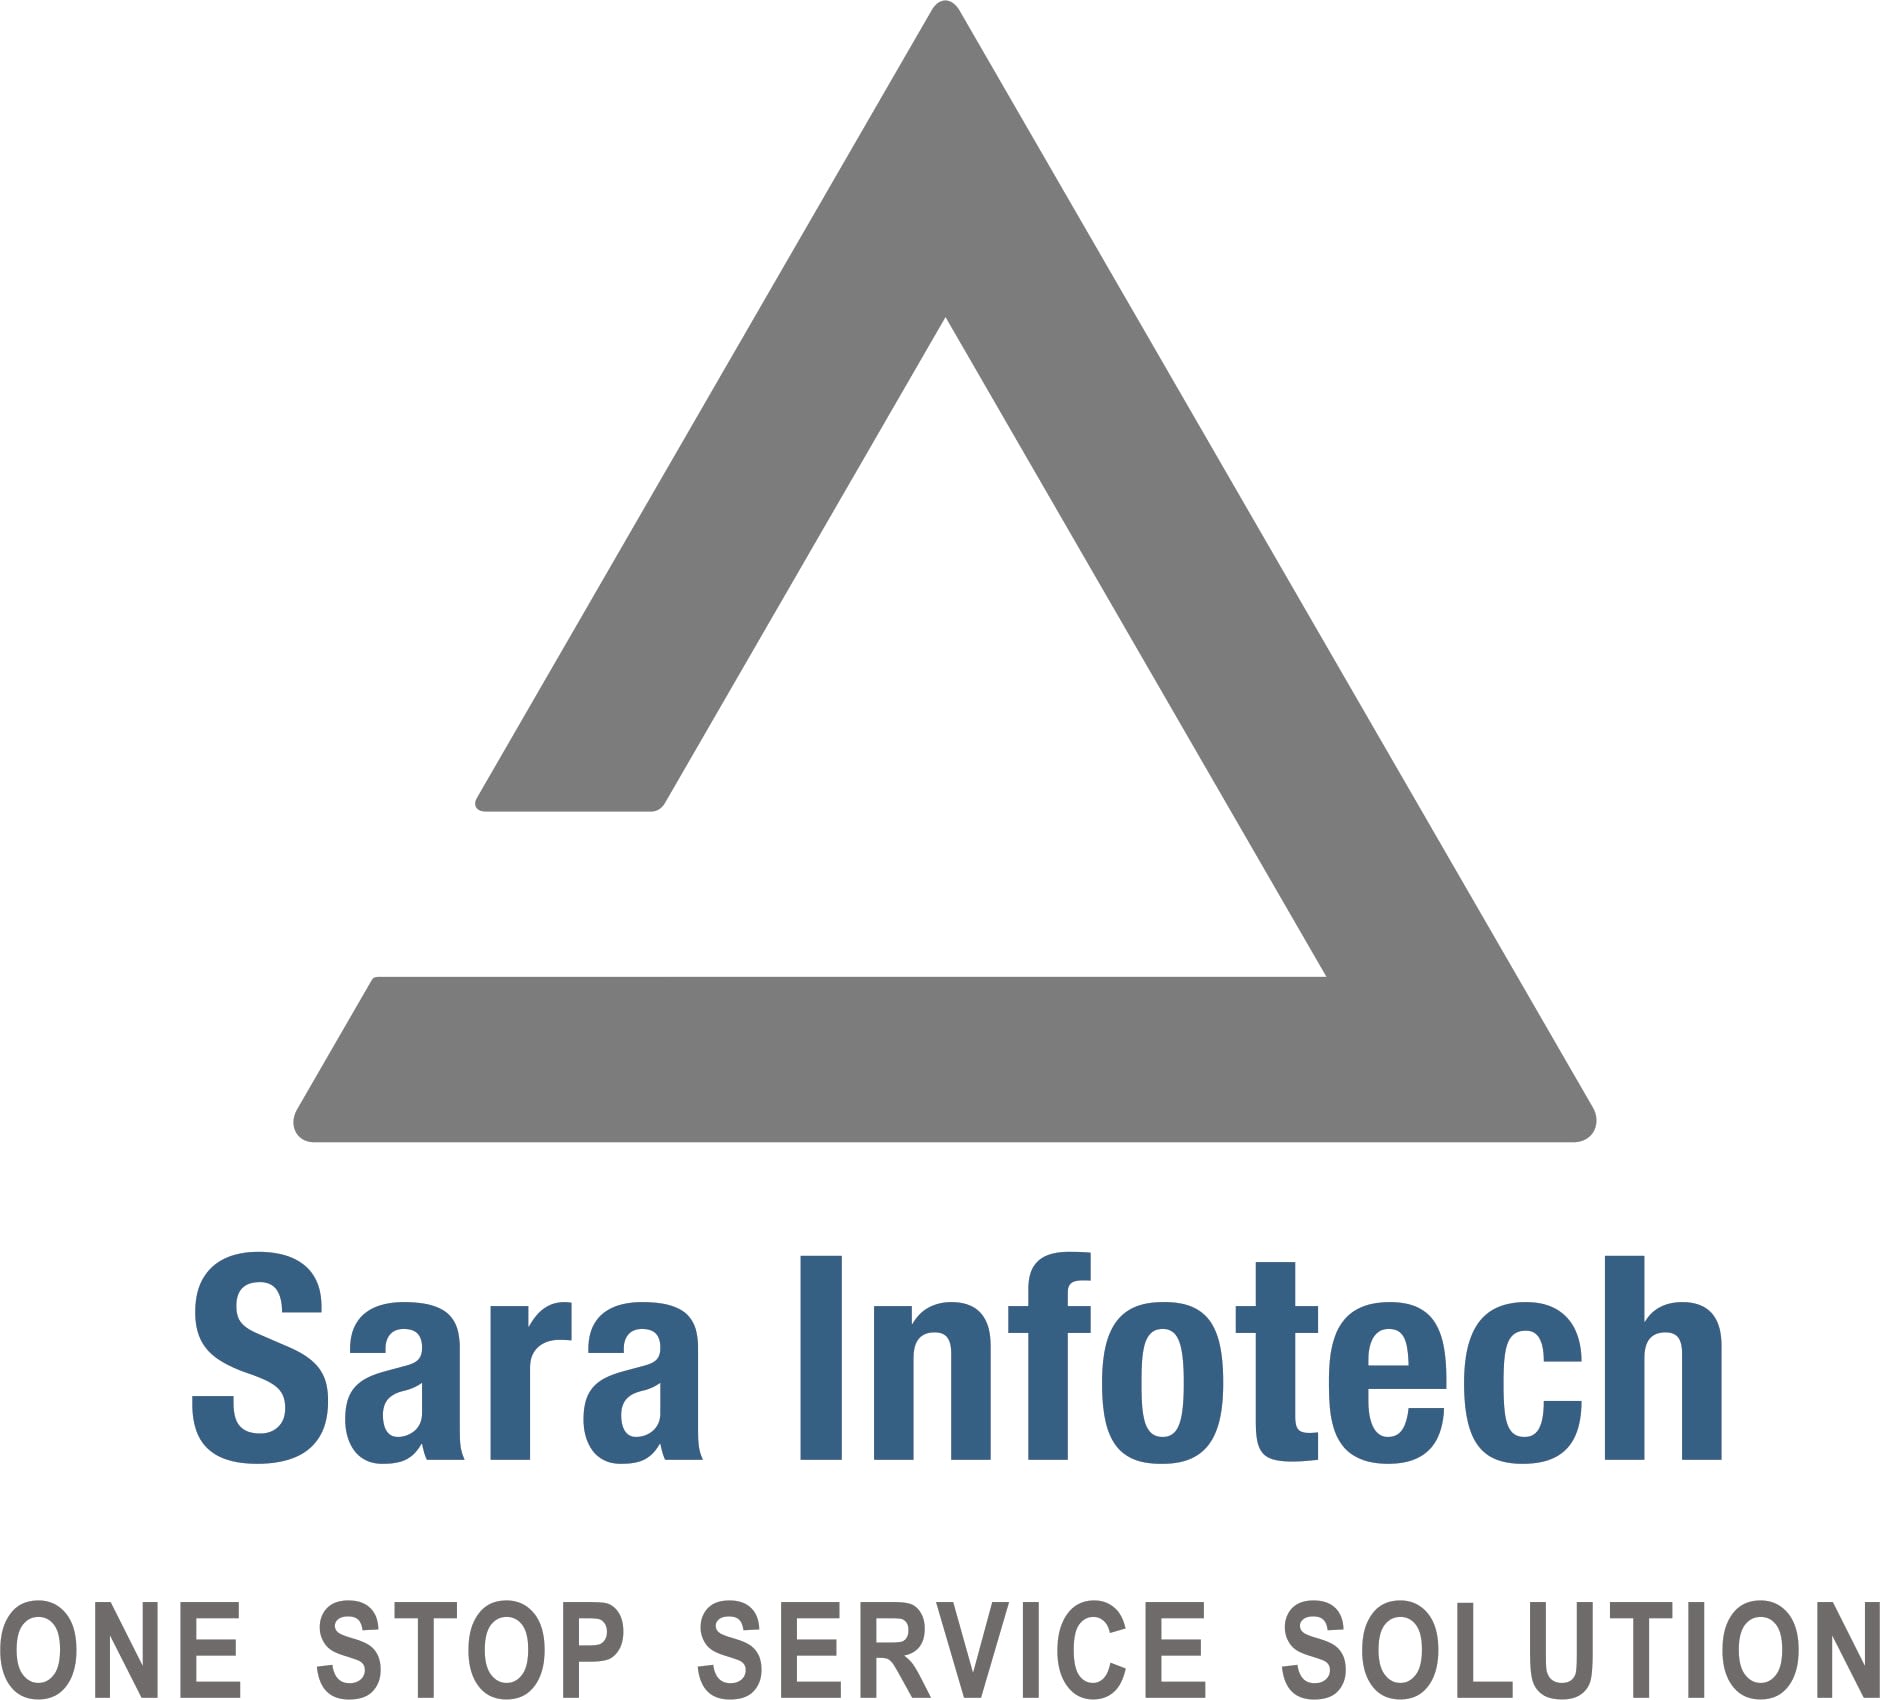 Sara Infotech